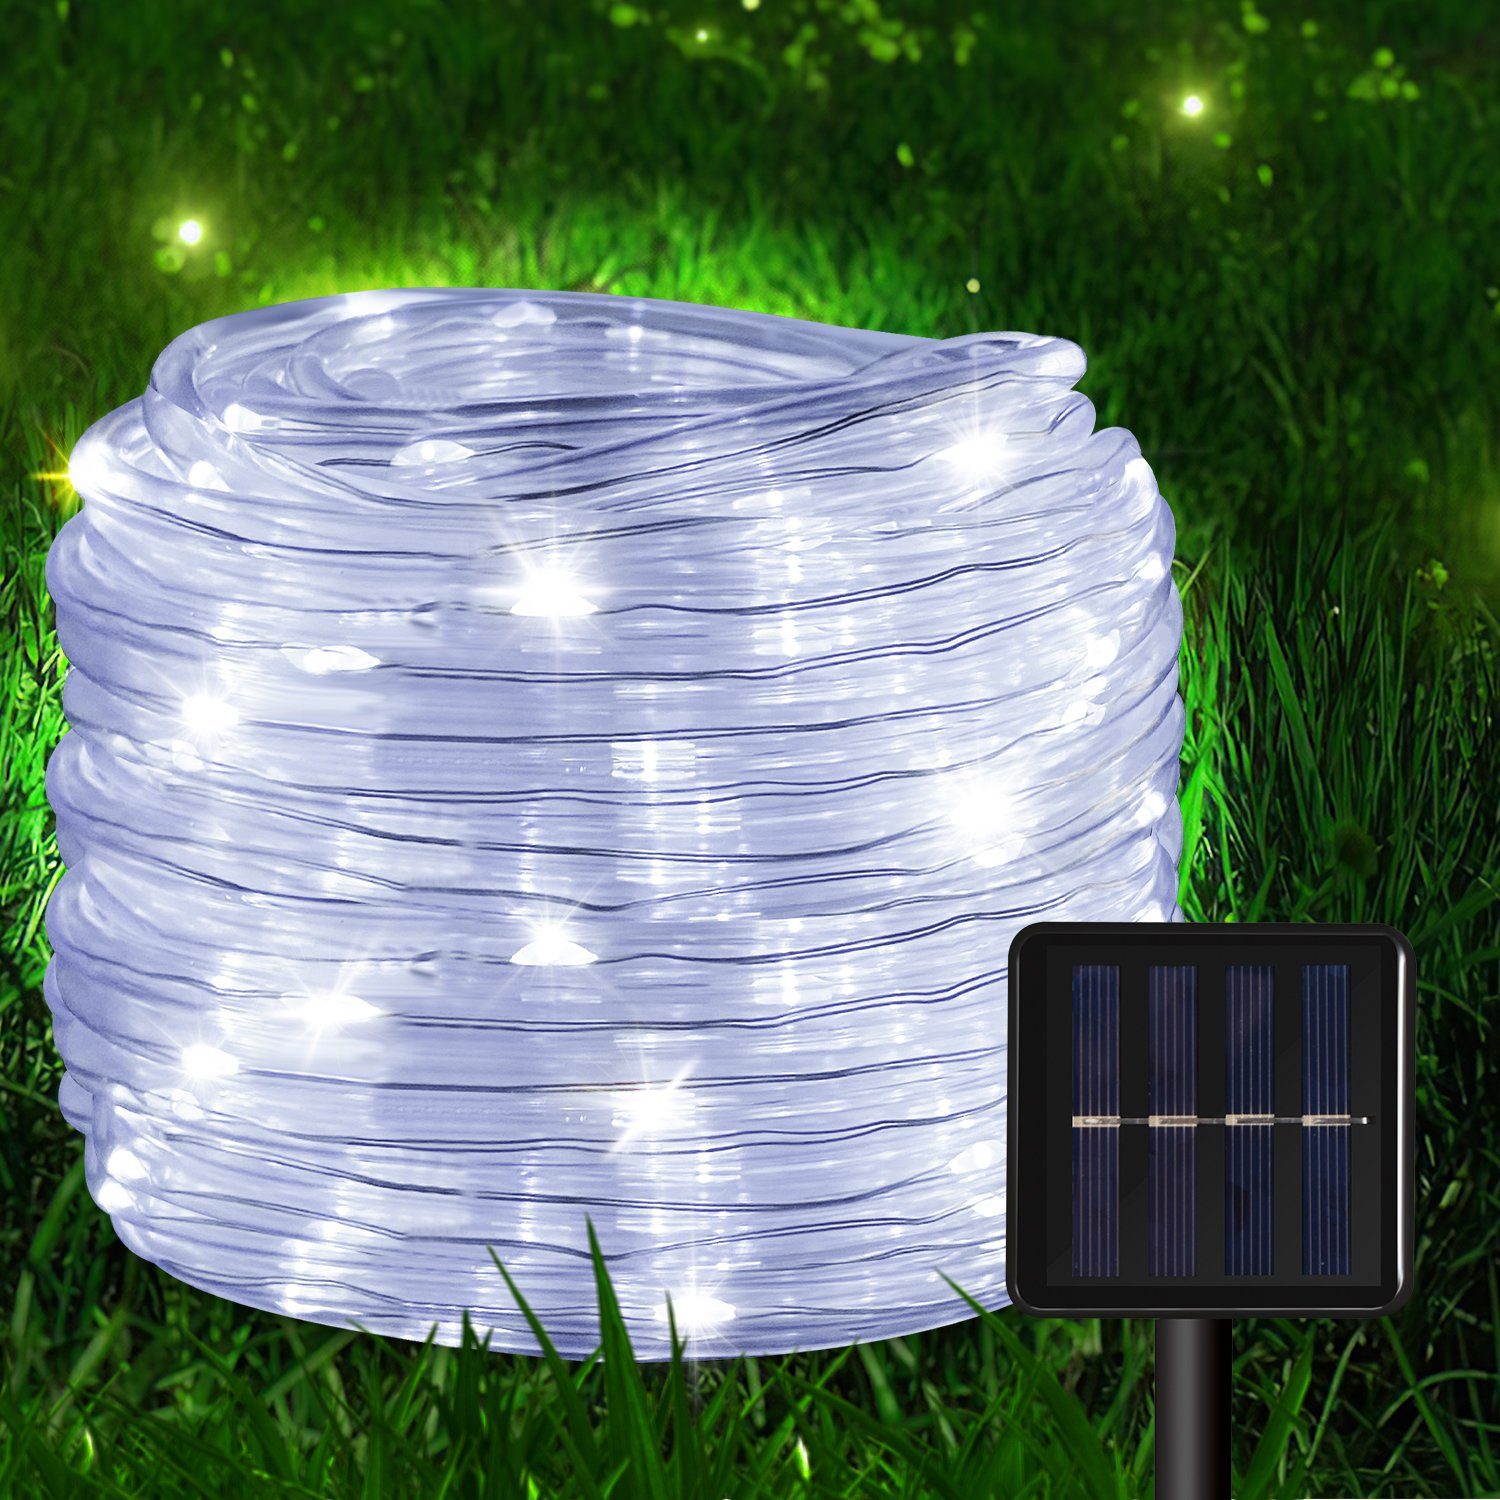 LED-Lichterschlauch Lichterkette Kaltweiß Lichtschlauch Lichterschlauch Wasserdicht 10m Solar Gimisgu LED